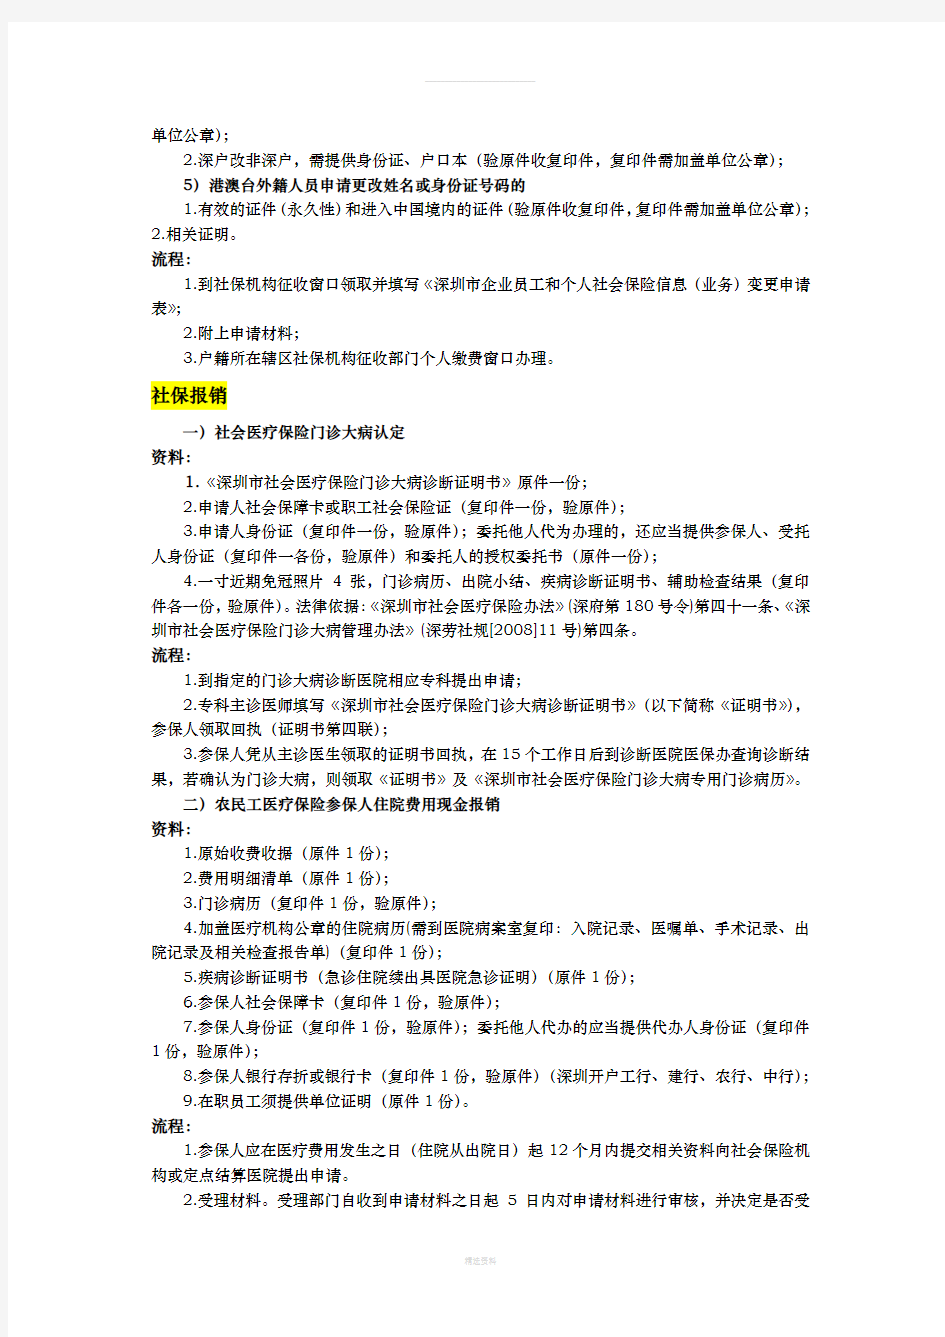 深圳市社会保险日常业务操作流程